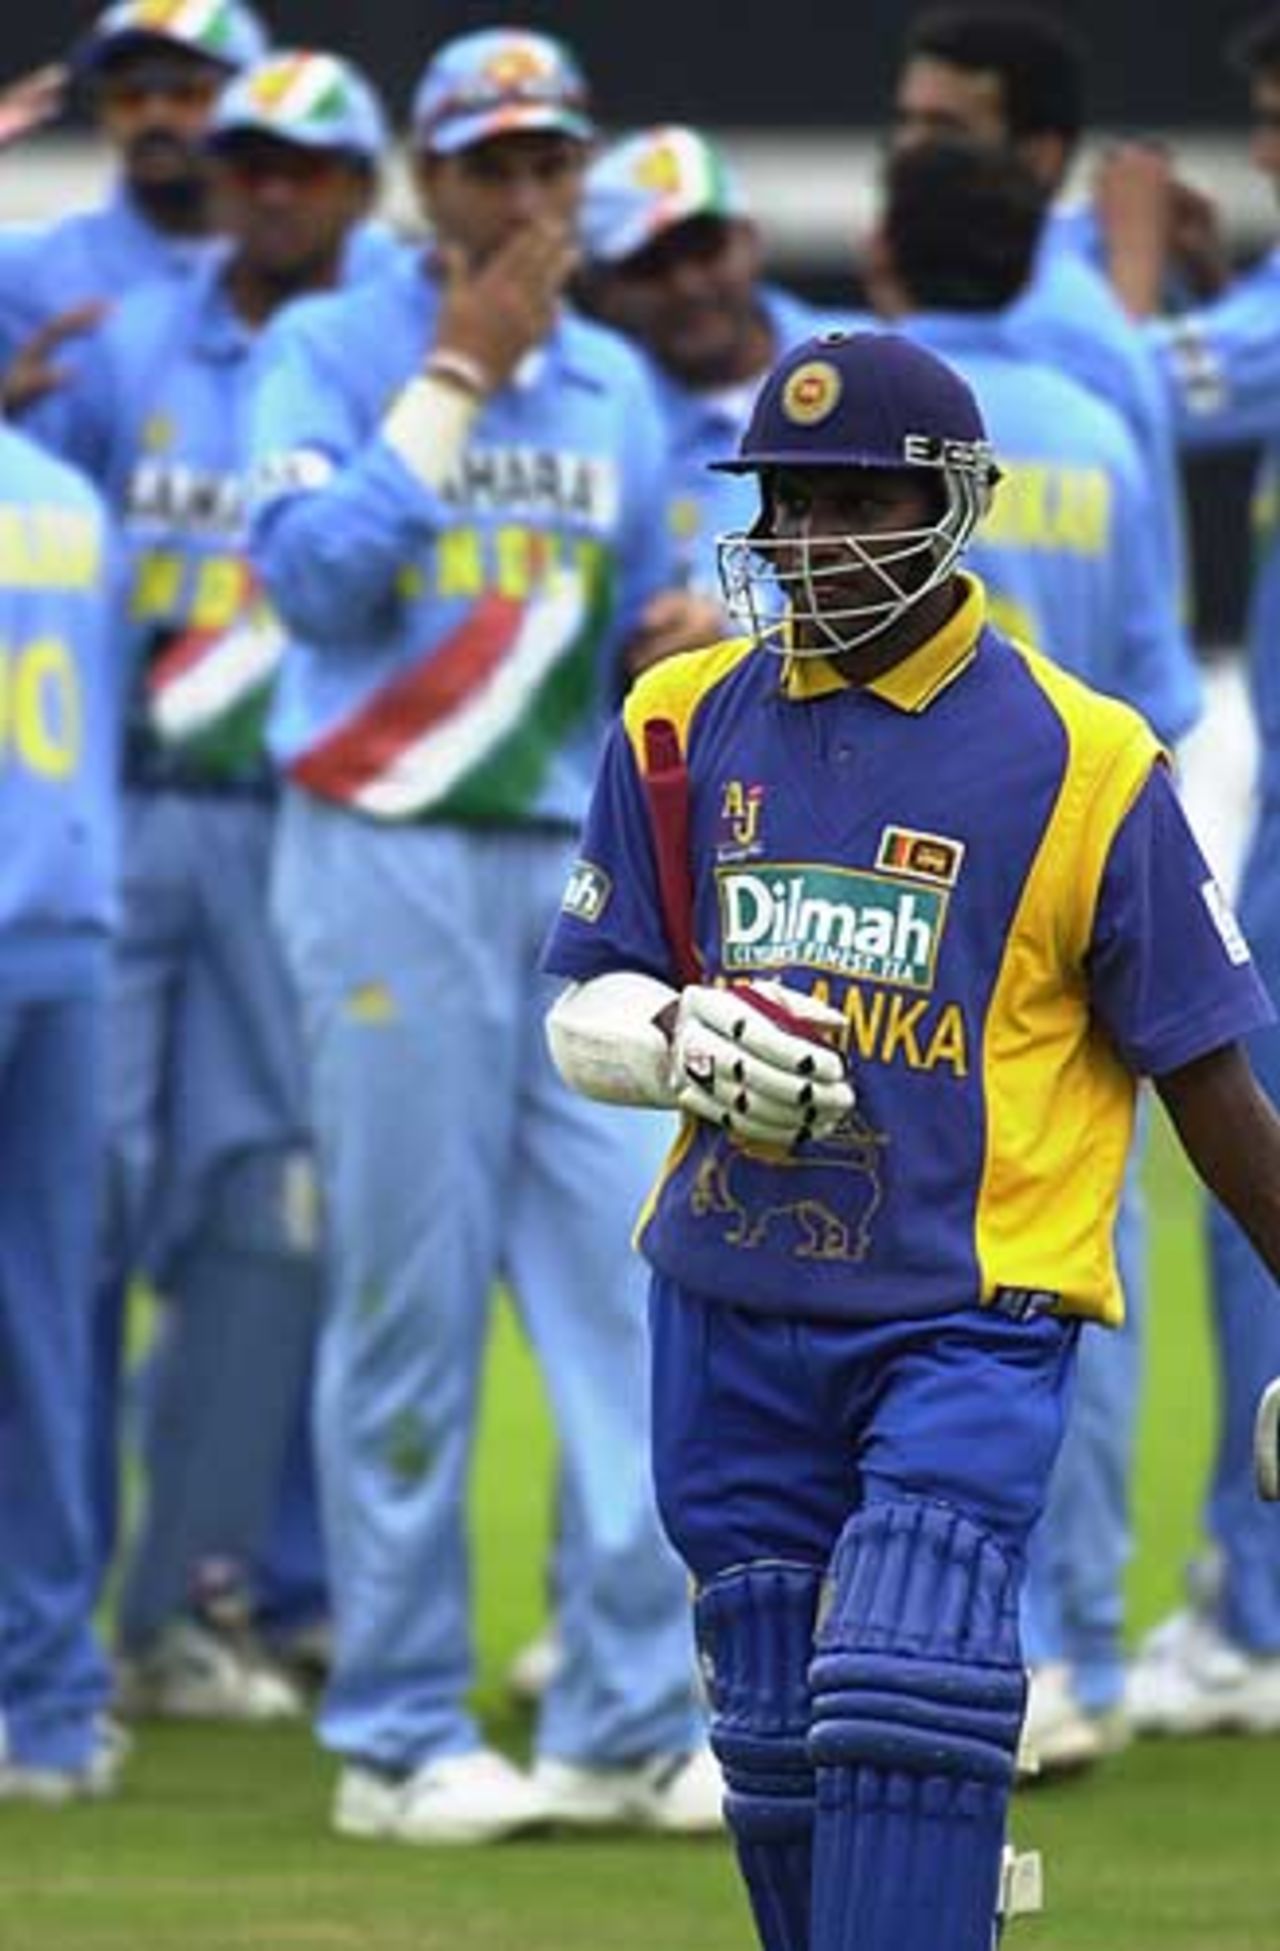 The end of the innings for Jayasuriya, out to Agarkar for 36, India v Sri Lanka, The Oval June 2002